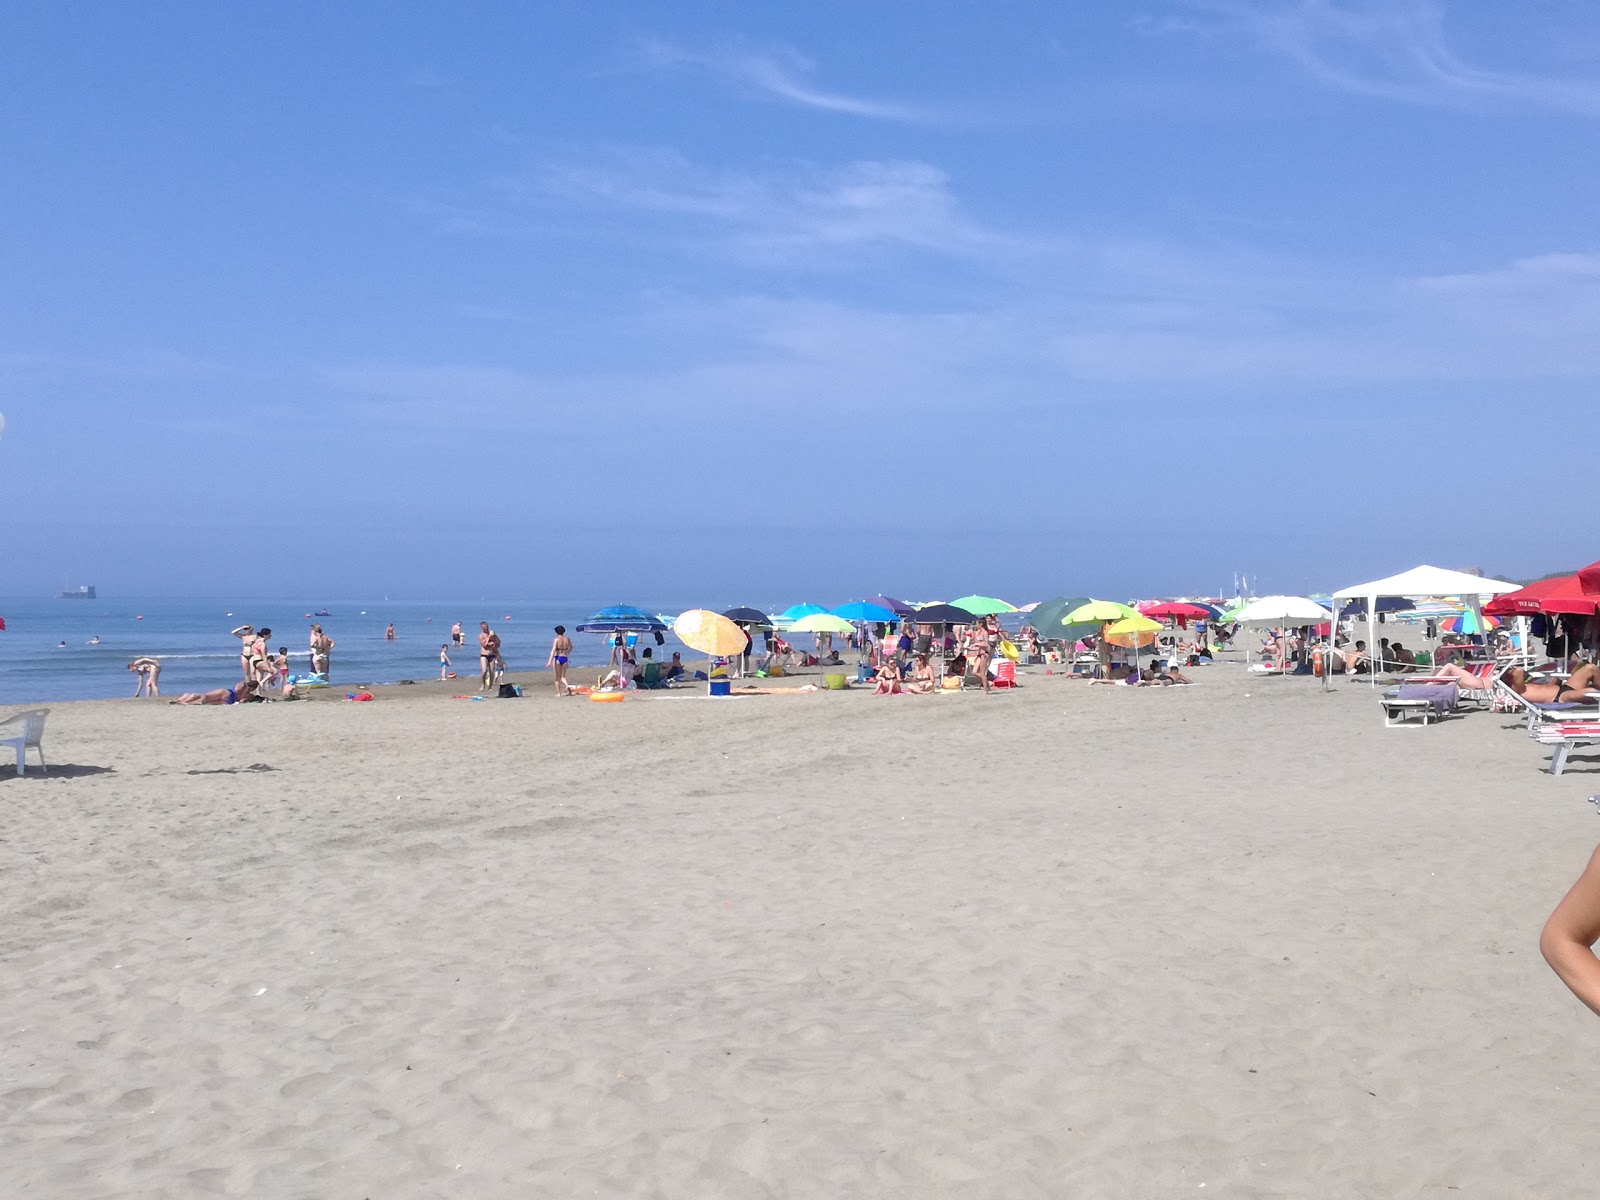 Zdjęcie Spiaggia Attrezzata i osada